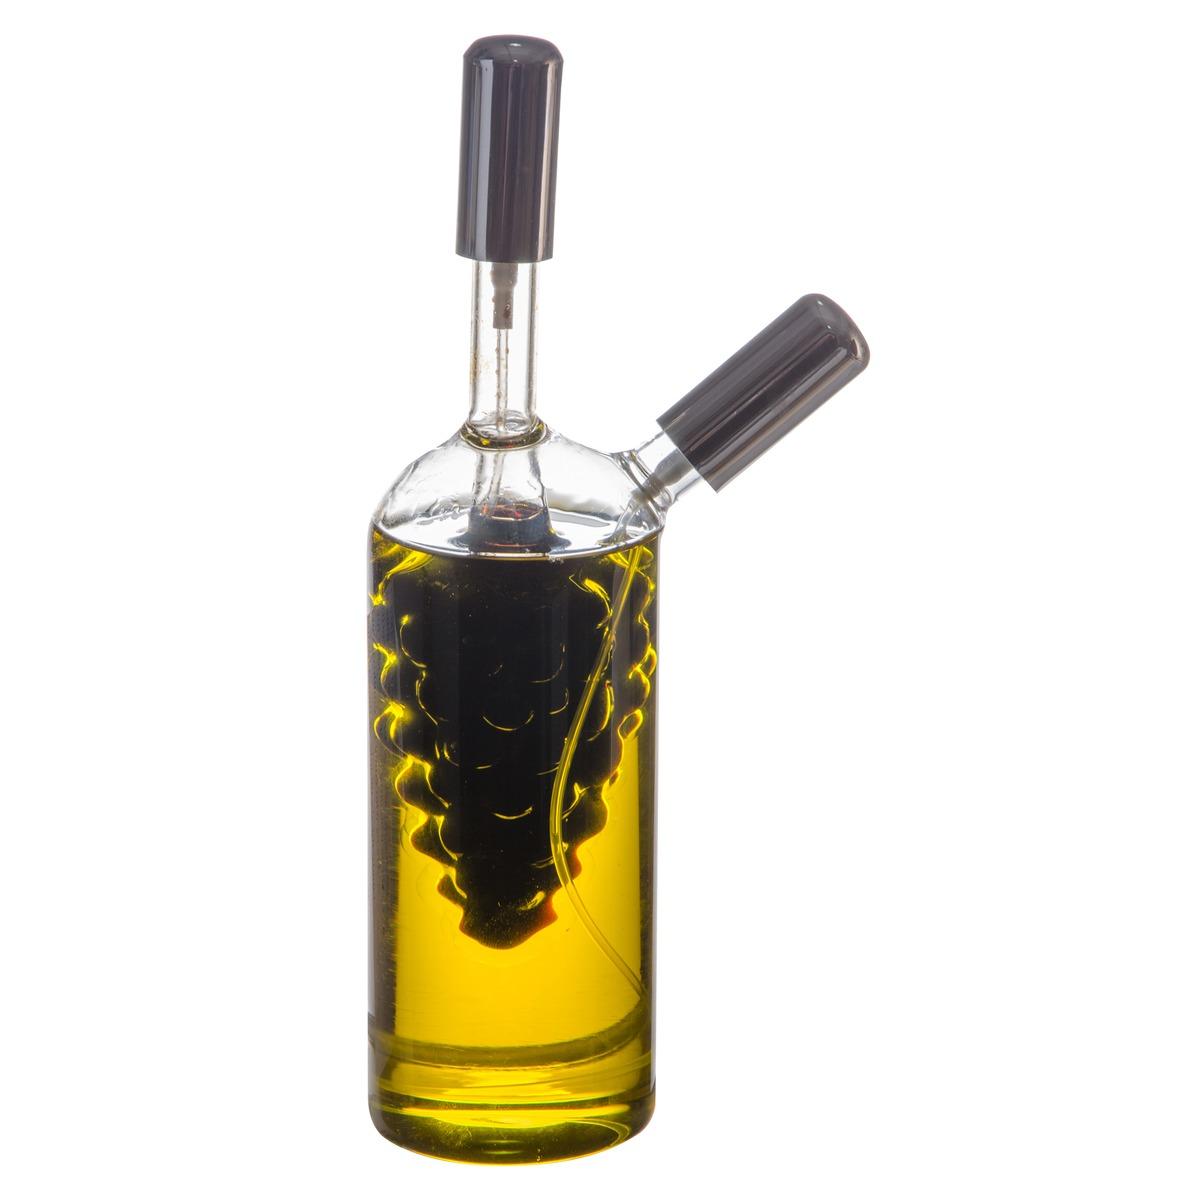 Vaporisateur huile et vinaigre en verre - Hauteur 22,5 cm - Transparent